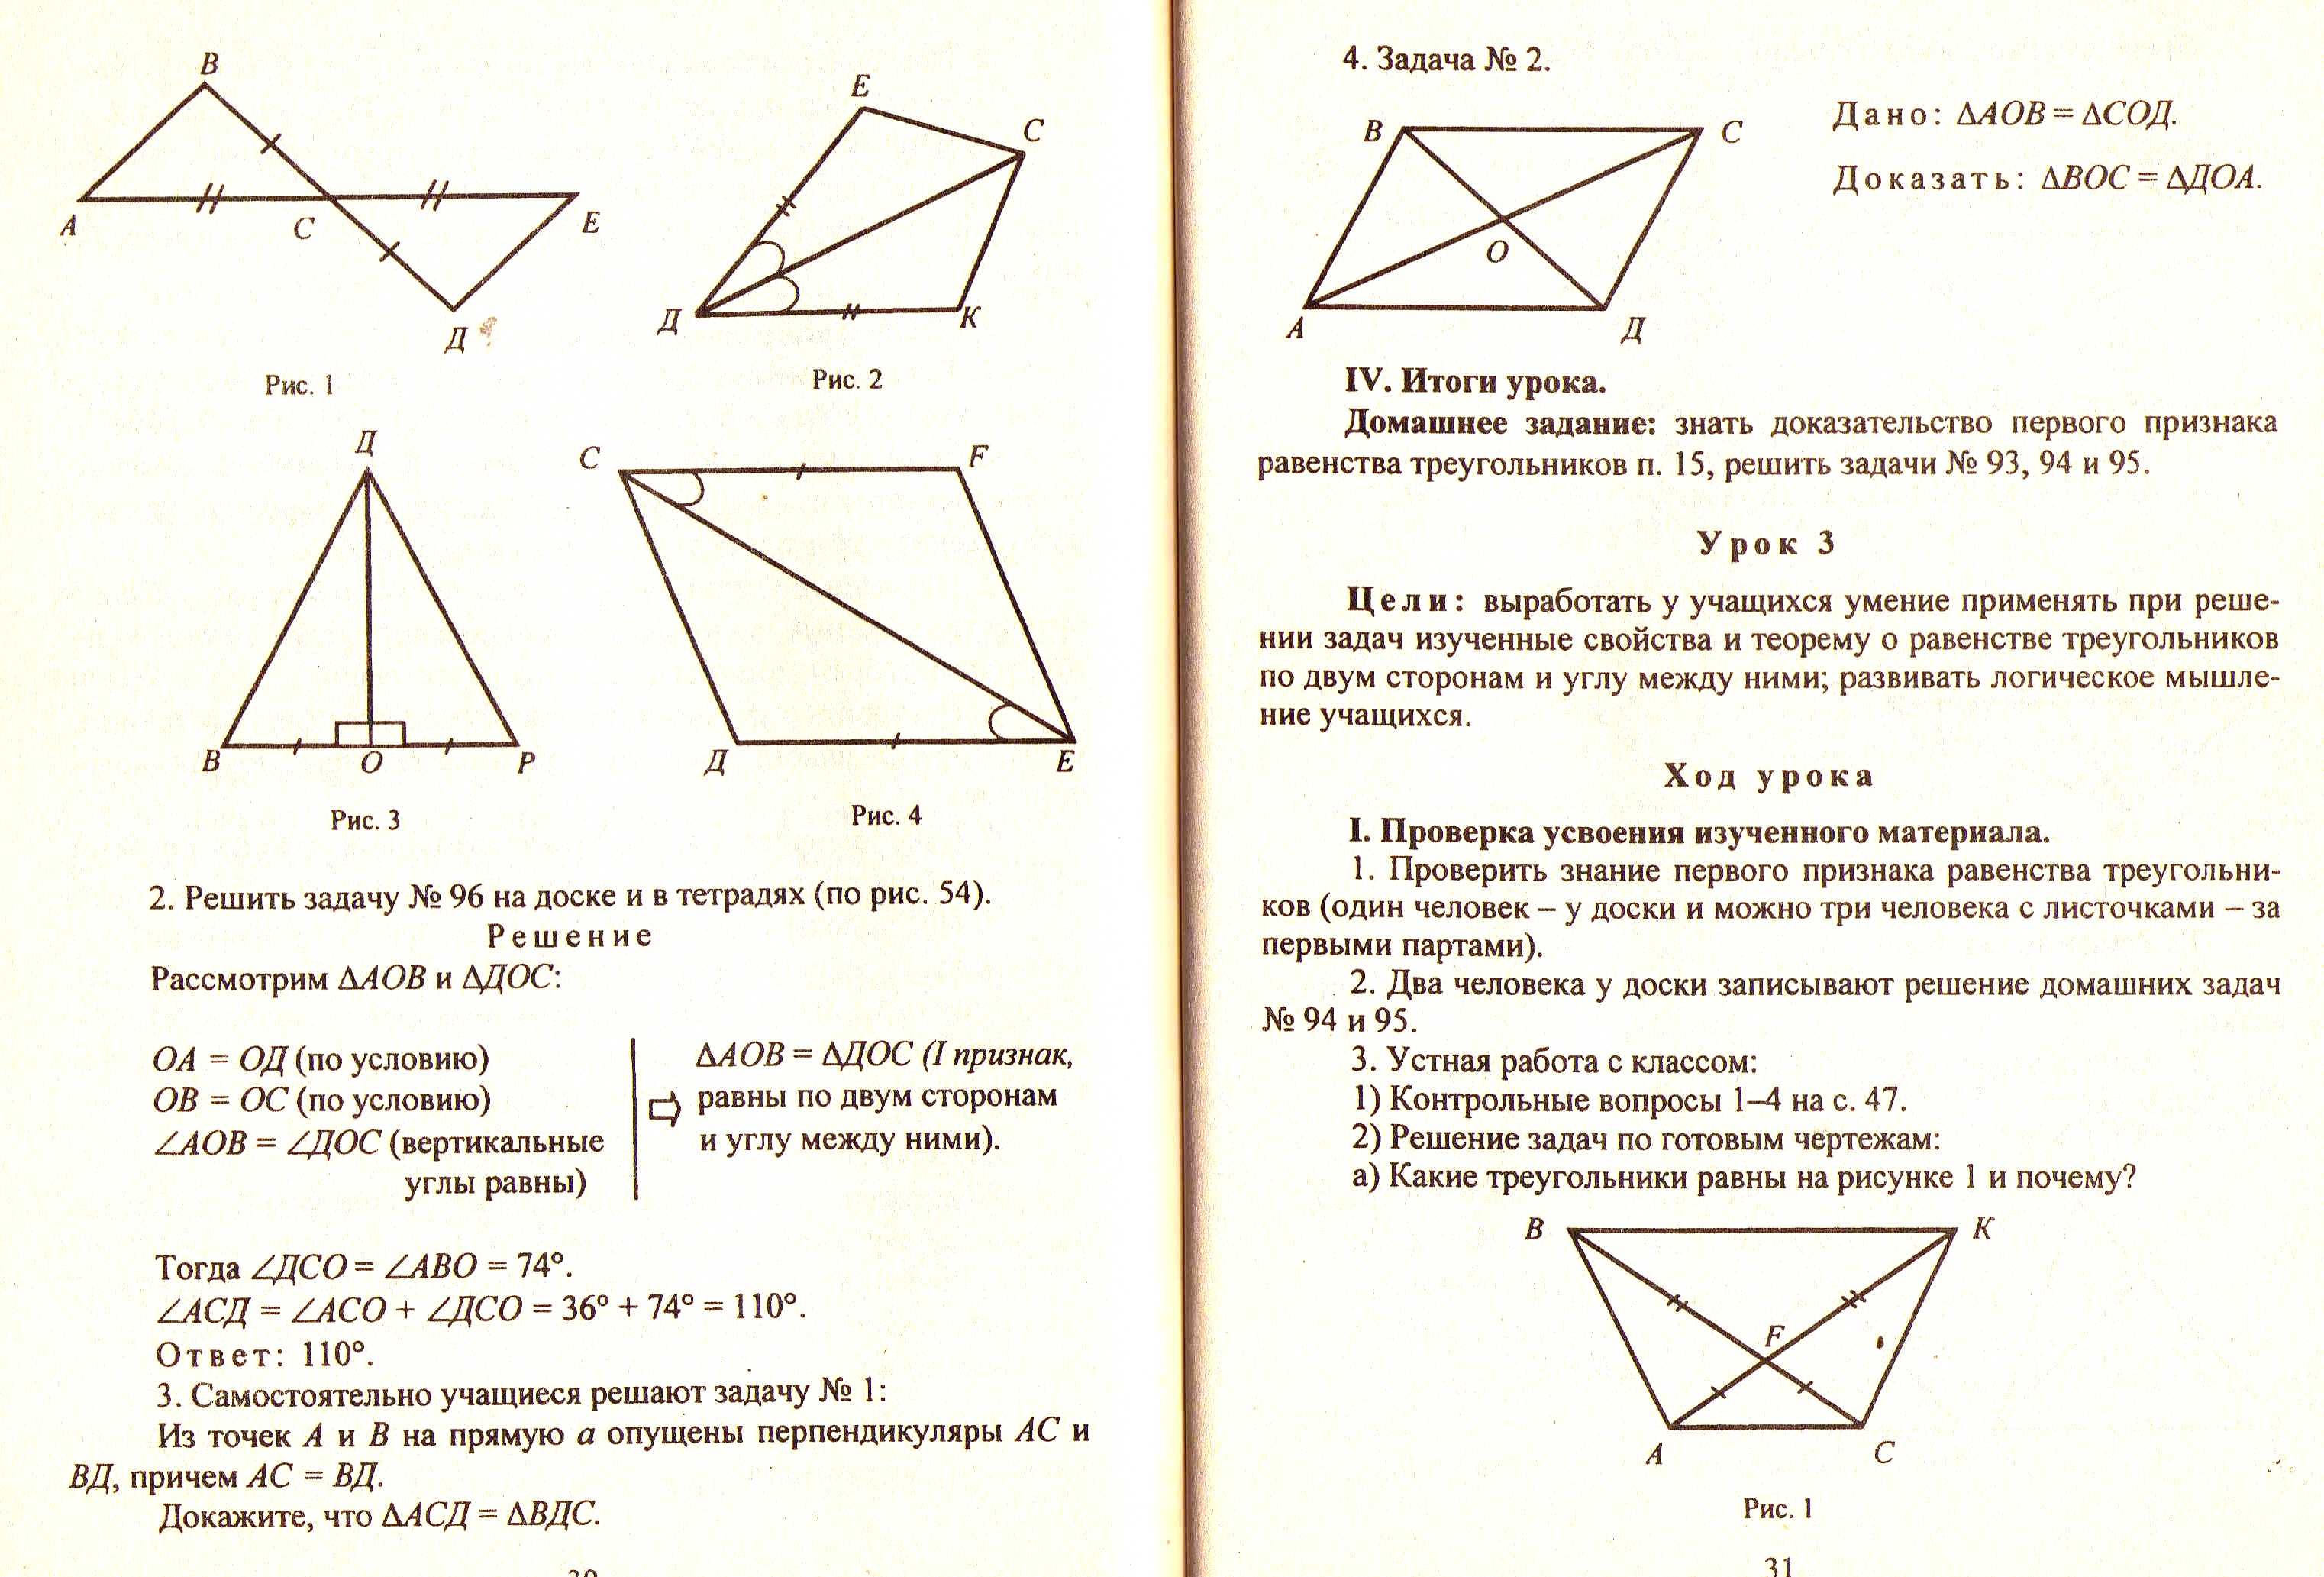 Тест треугольники признаки равенства треугольников ответы. Доказать равенство треугольников 7 класс геометрия. Задачи по геометрии 7 класс треугольники доказать. Задания по геометрии 7 класс признаки равенства треугольников. Признаки равенства треугольников 7 класс геометрия.